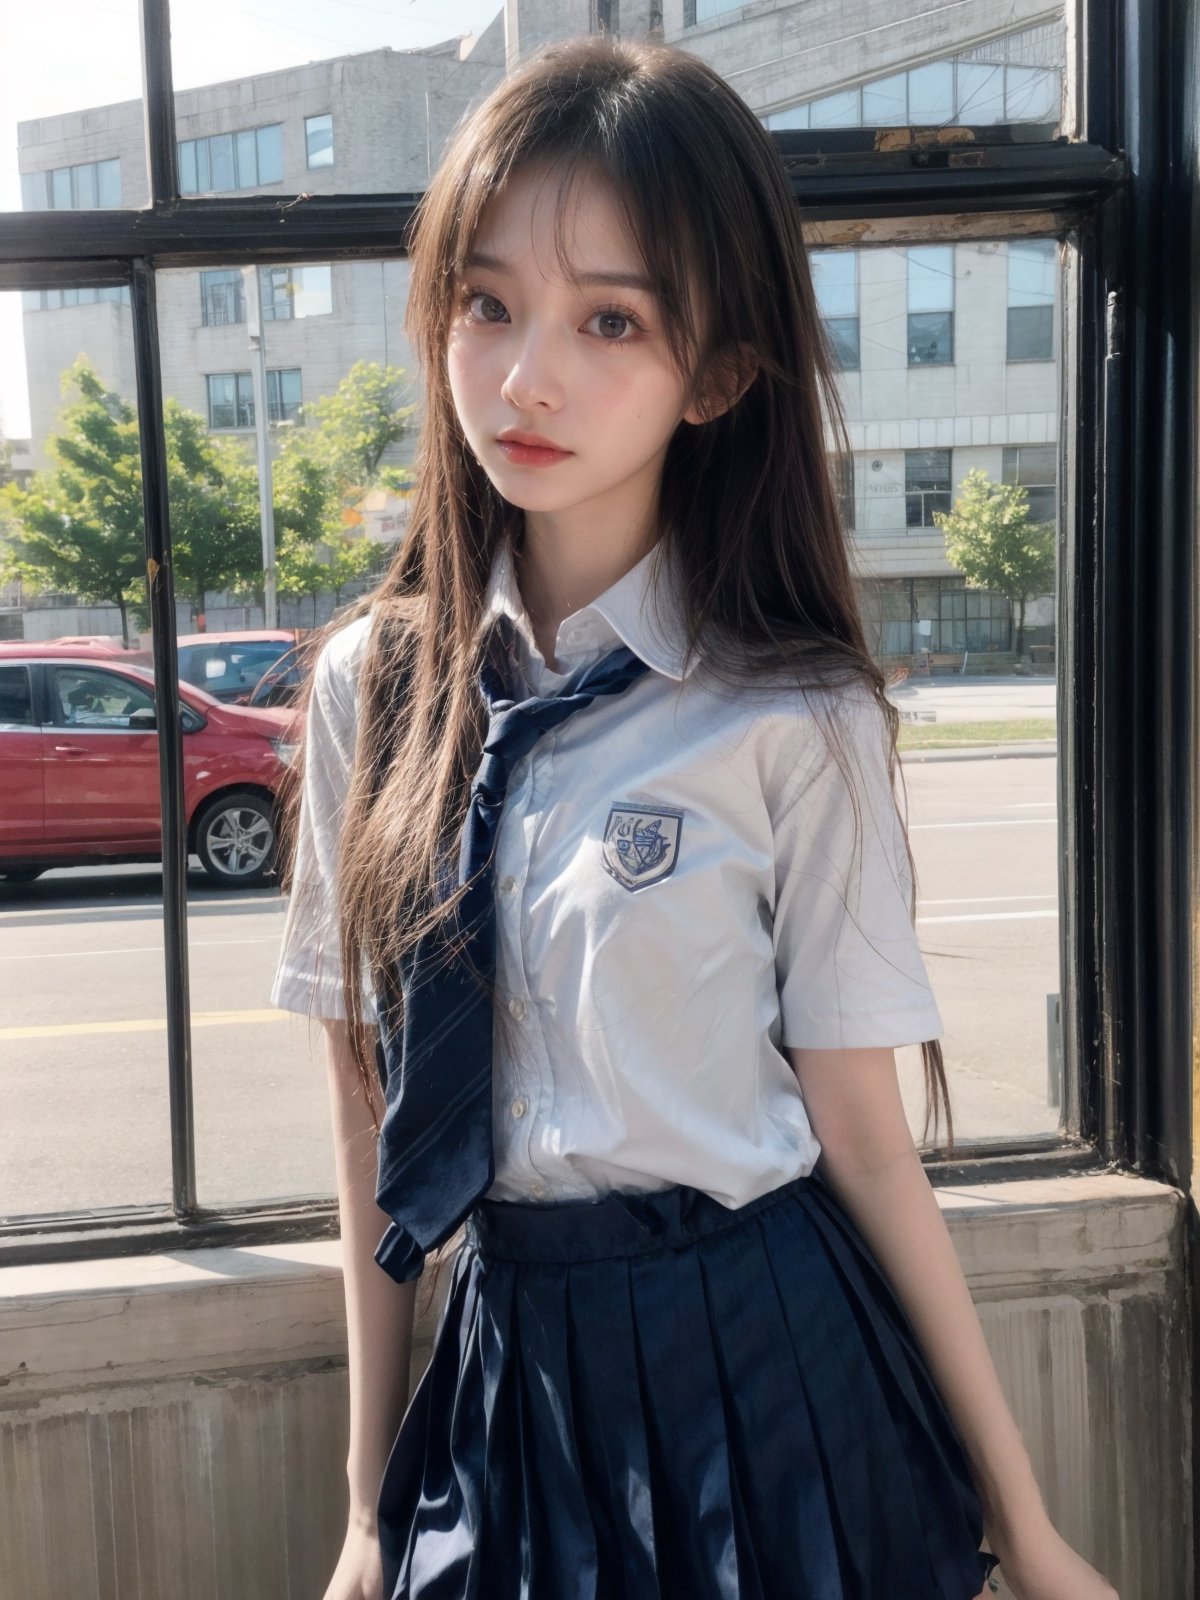 a girl,16y,wear school uniform,